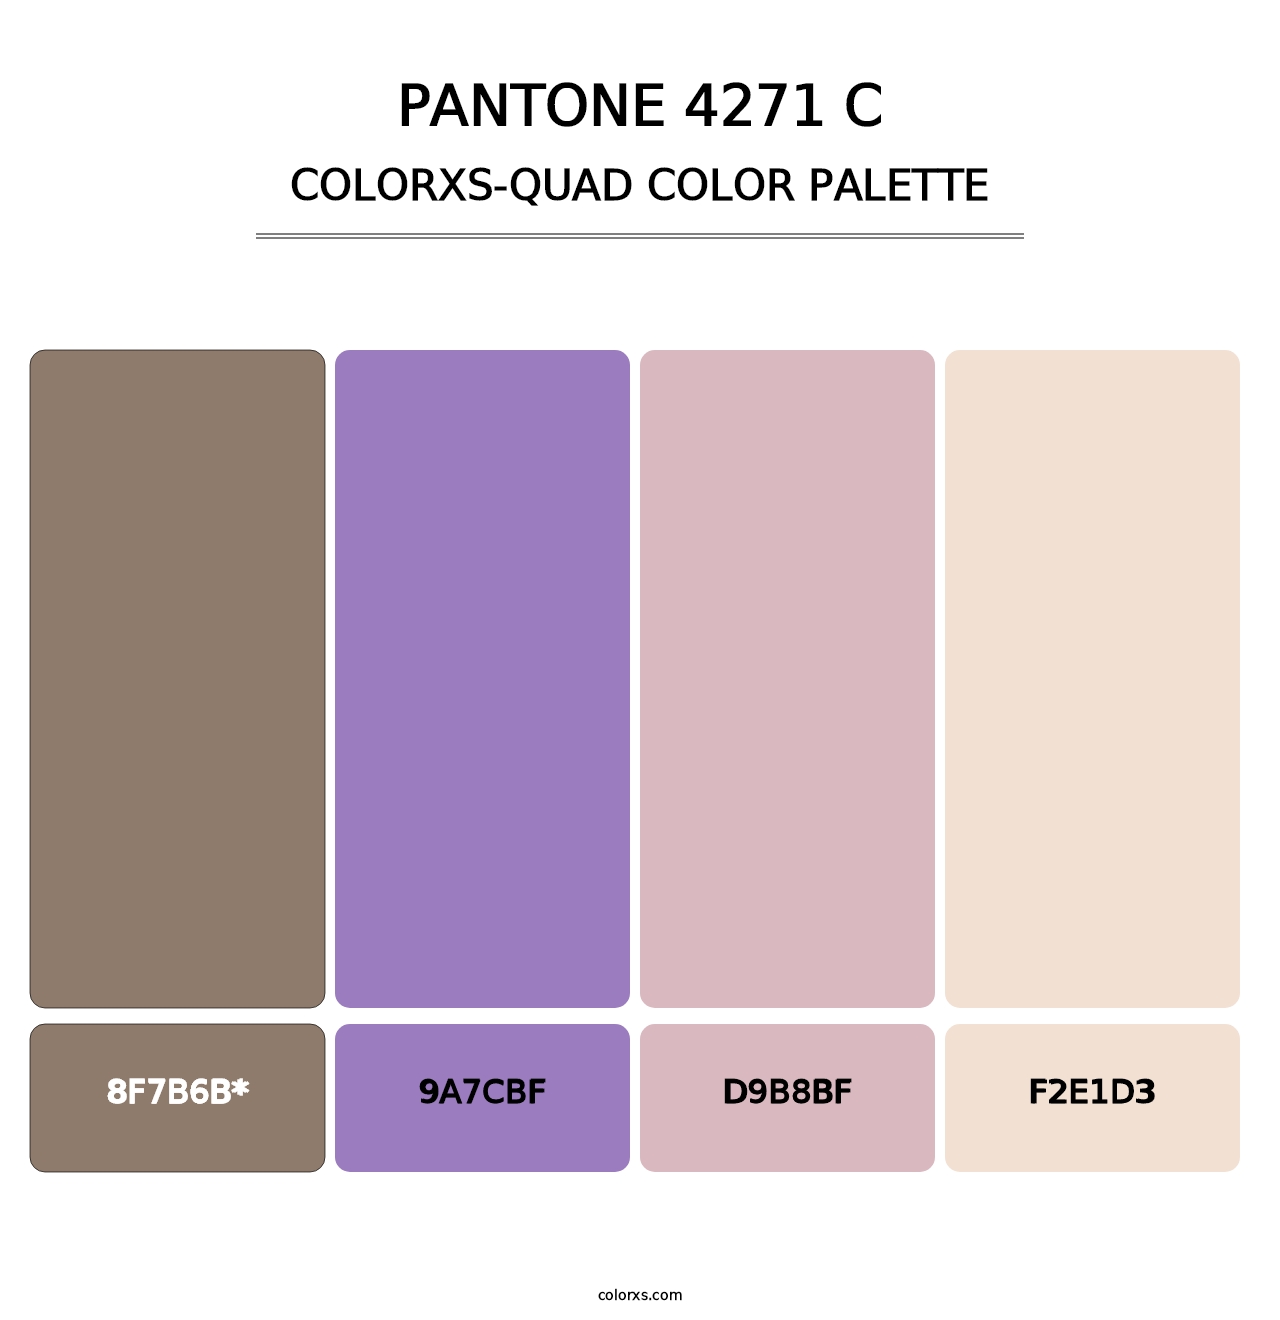 PANTONE 4271 C - Colorxs Quad Palette